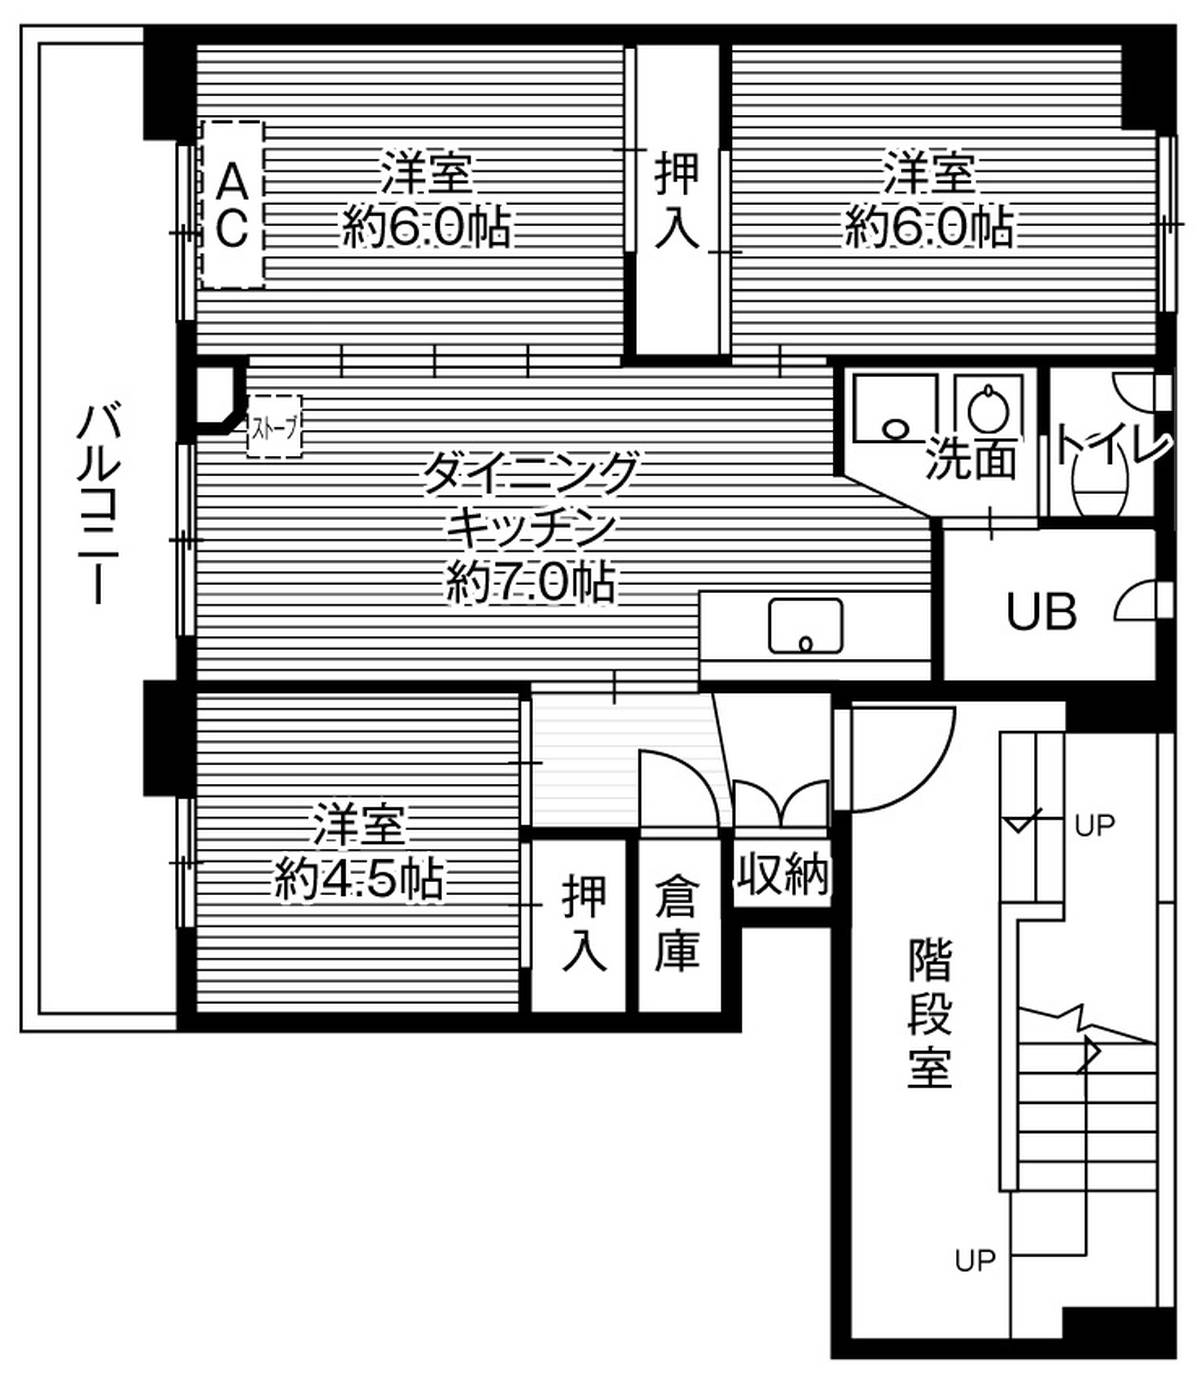 2LDK floorplan of Village House Ishikari in Ishikari-shi